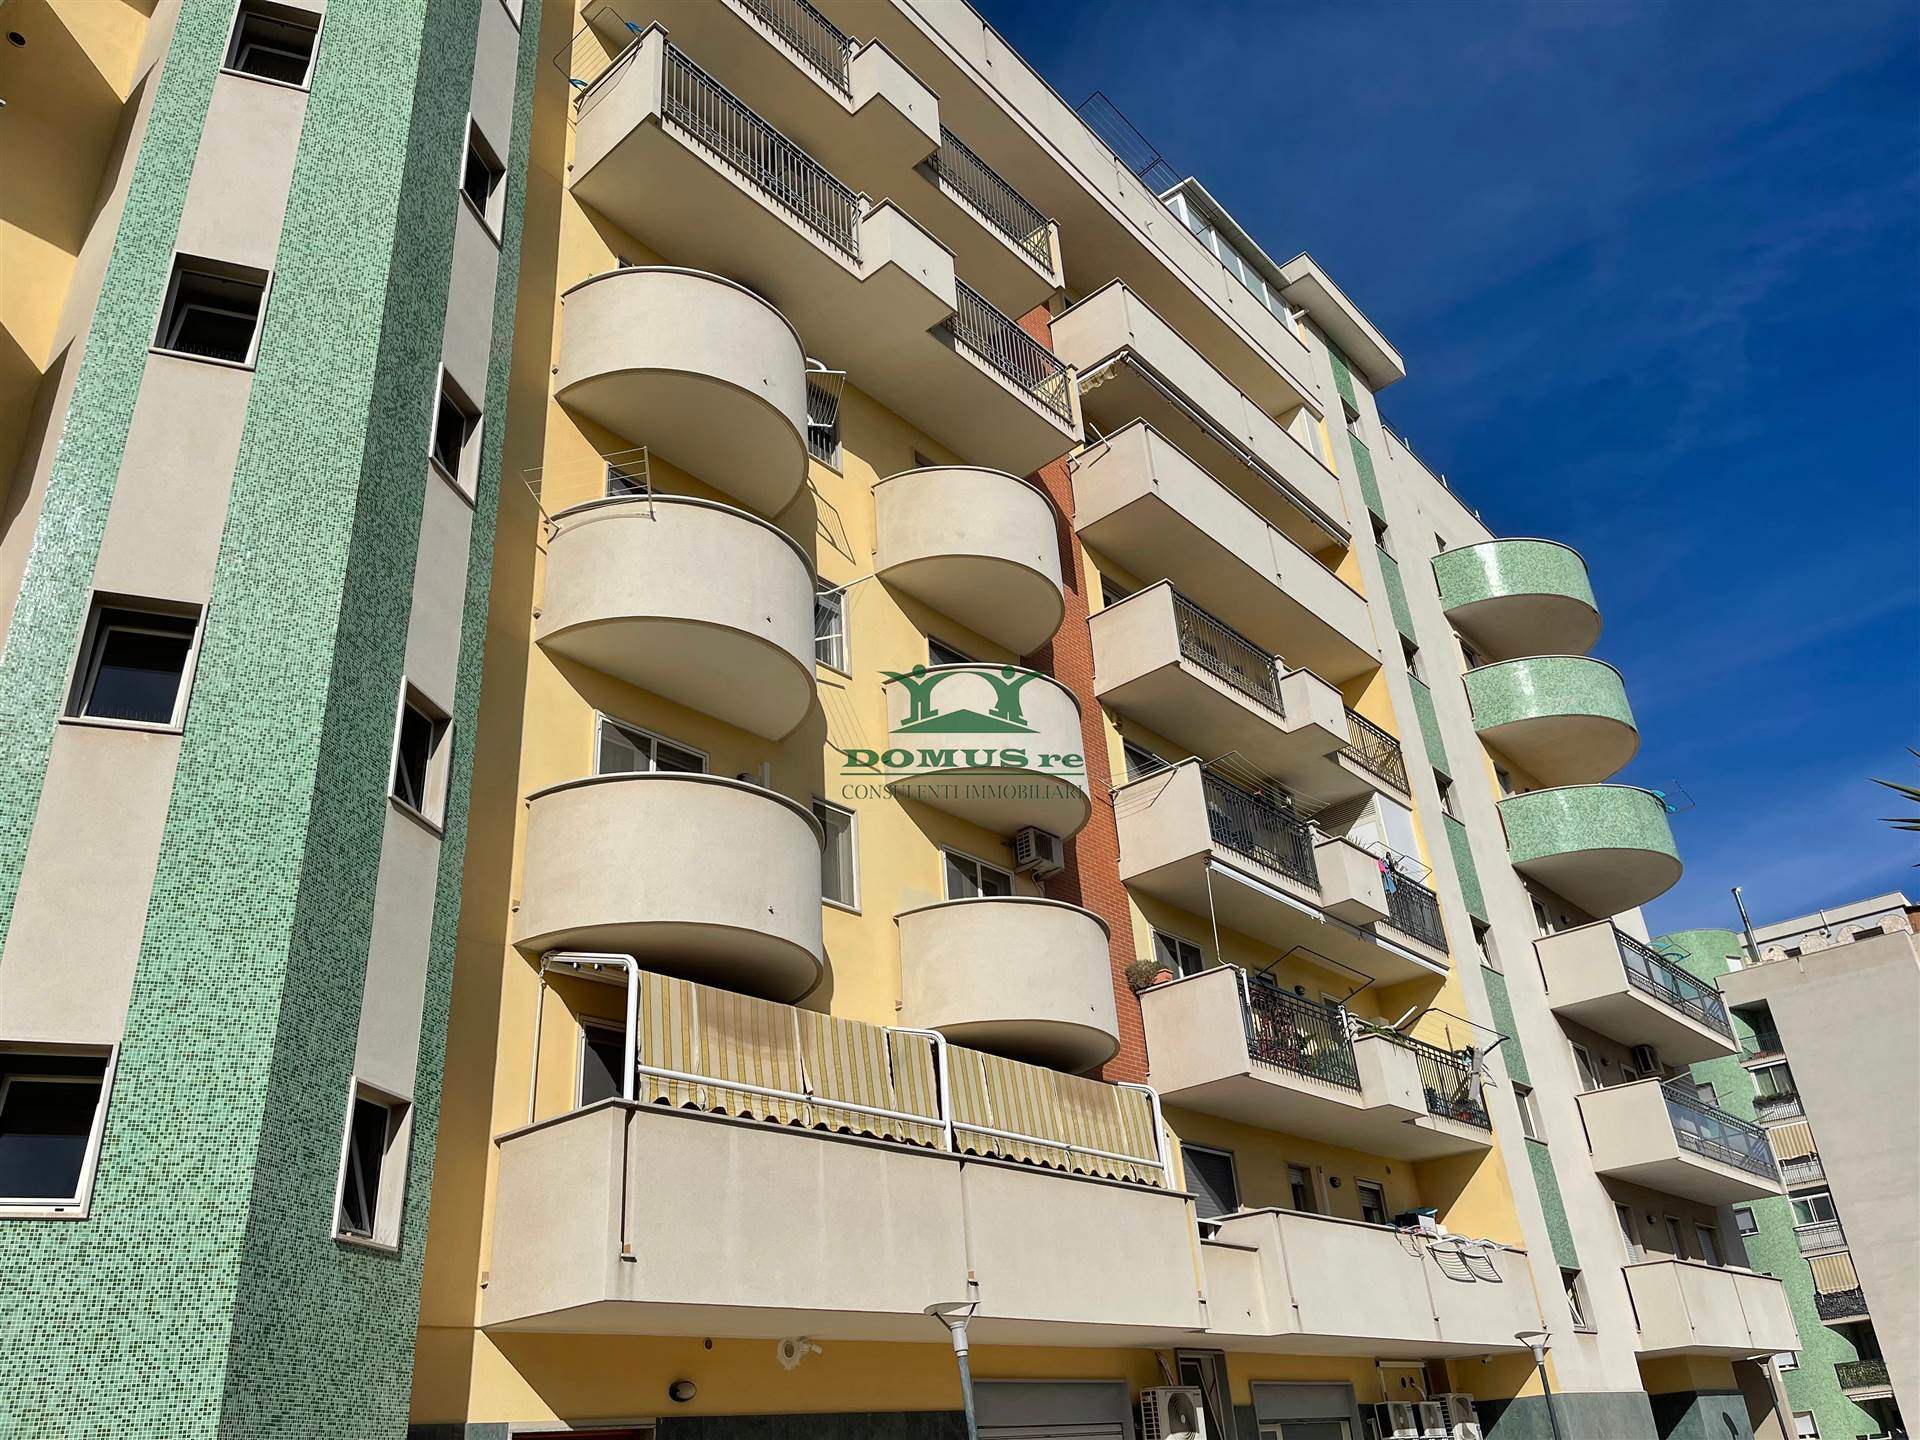 Appartamento in vendita a Andria, 3 locali, zona Località: GARIBALDI/FERRUCCI, prezzo € 120.000 | PortaleAgenzieImmobiliari.it